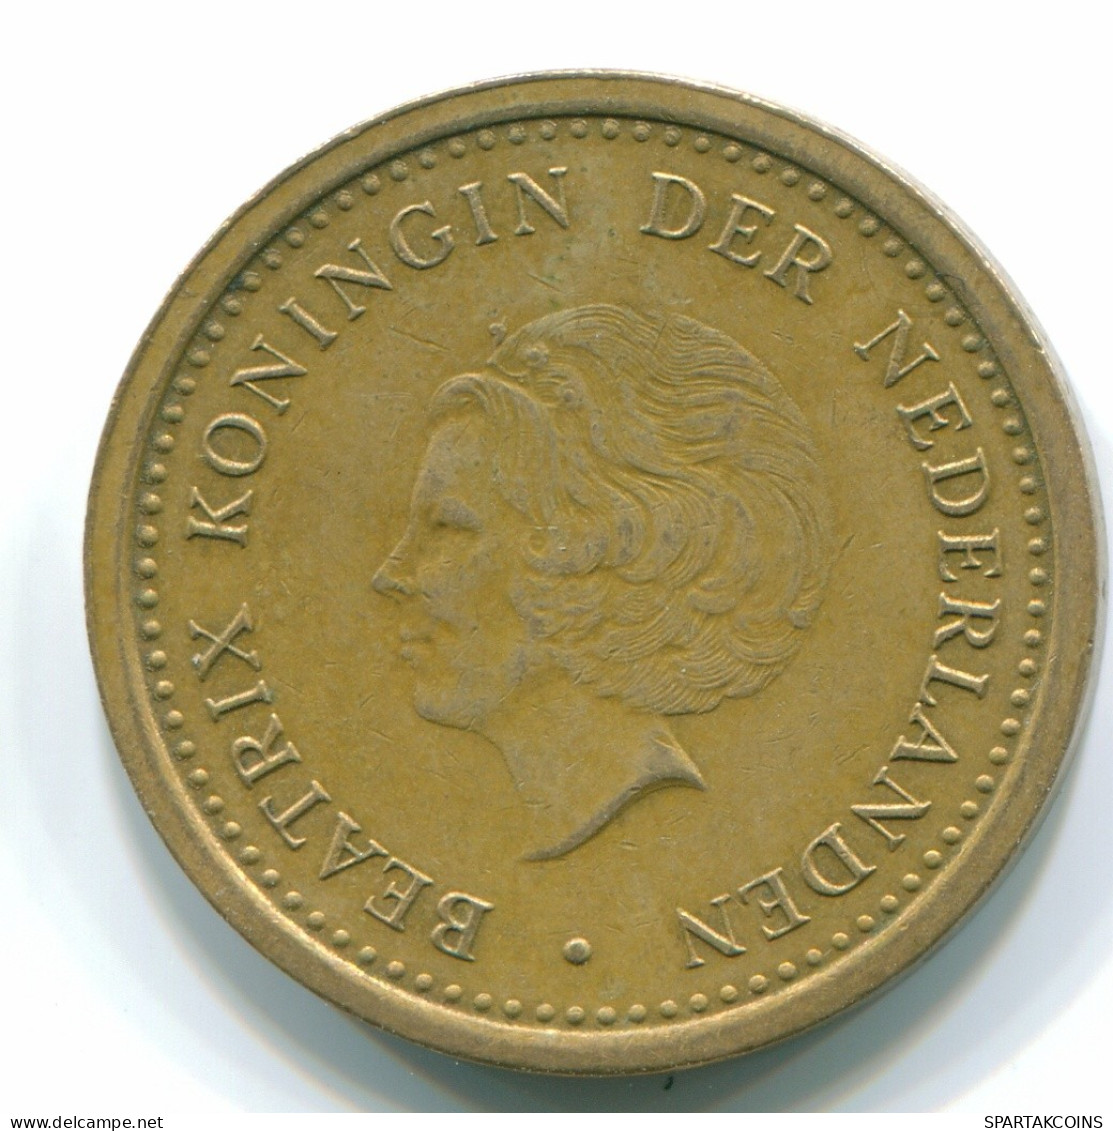 1 GULDEN 1991 NETHERLANDS ANTILLES Aureate Steel Colonial Coin #S12117.U.A - Niederländische Antillen